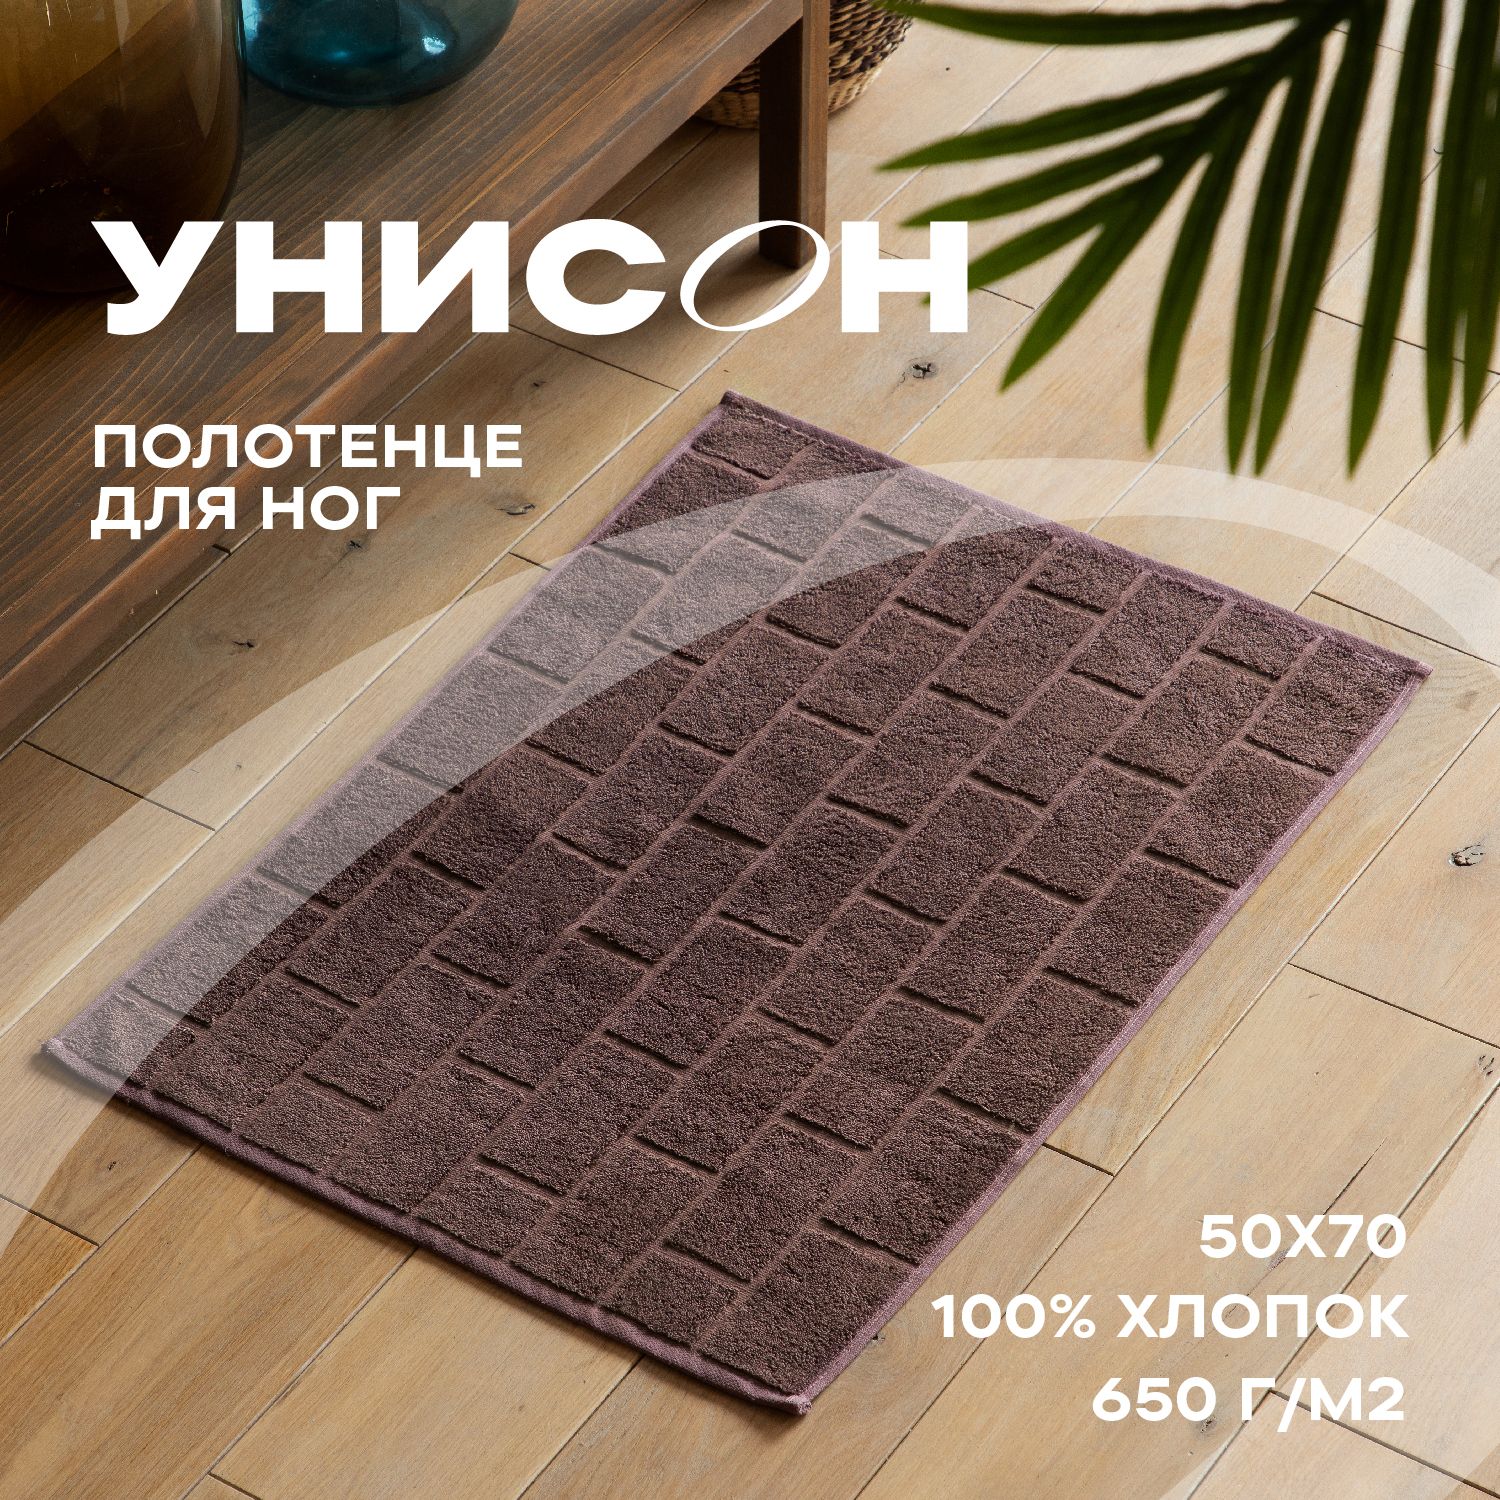 Полотенце махровое для ног 50х70 (коврик) 